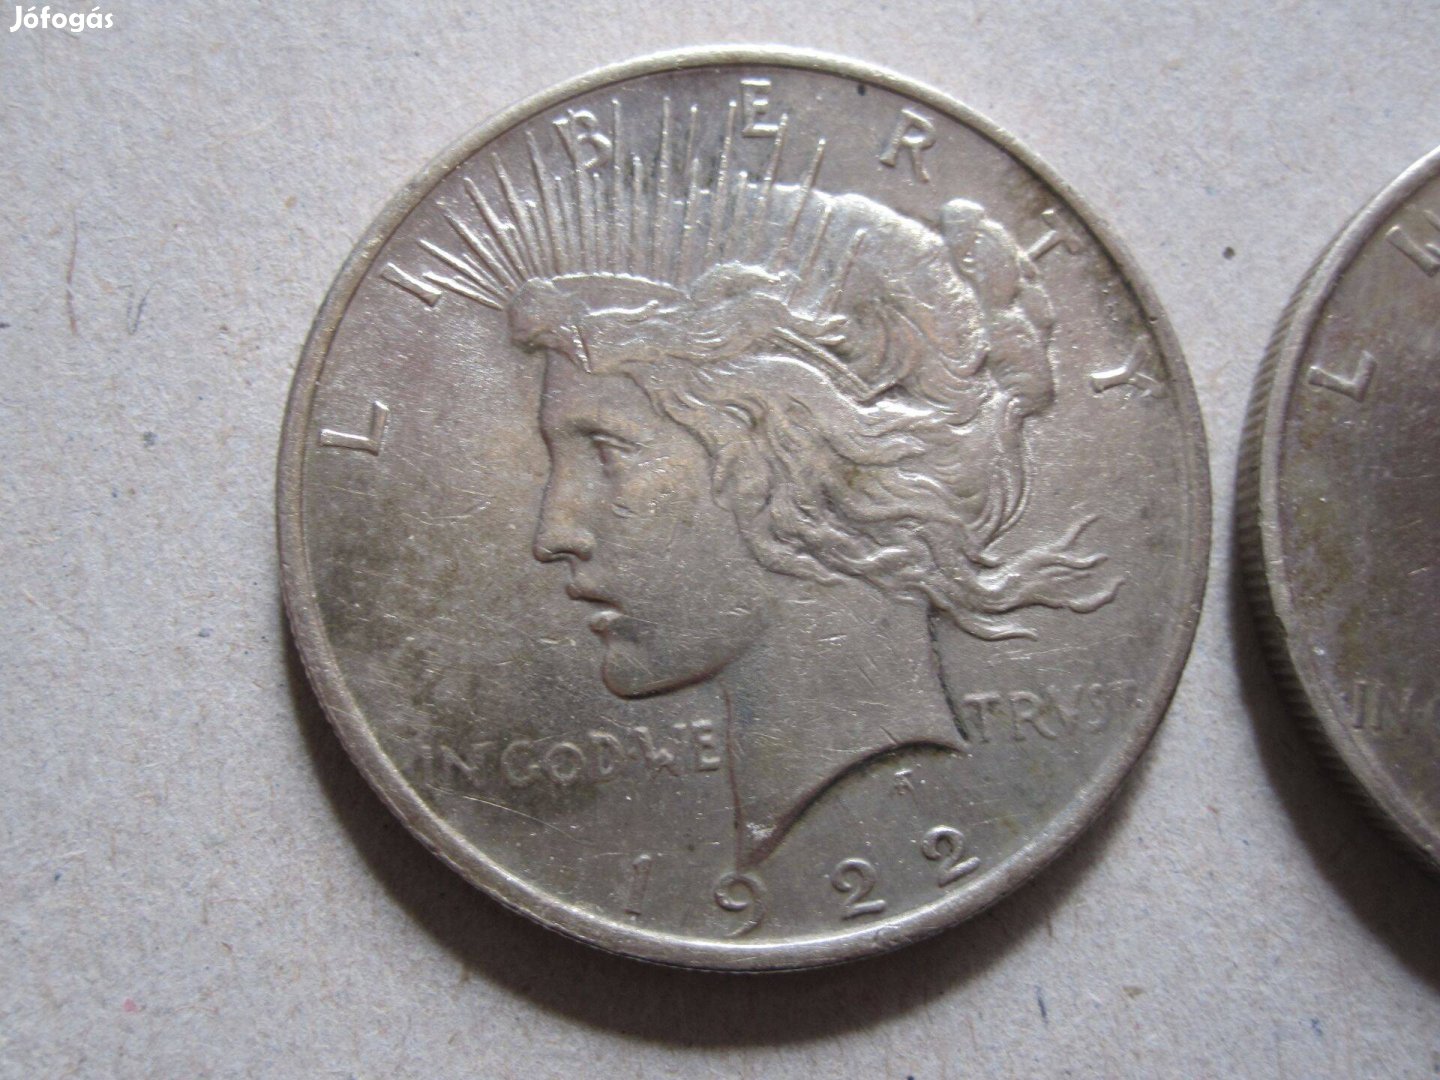 2db USA Peace dollar 1922-23 0.900 ezüst